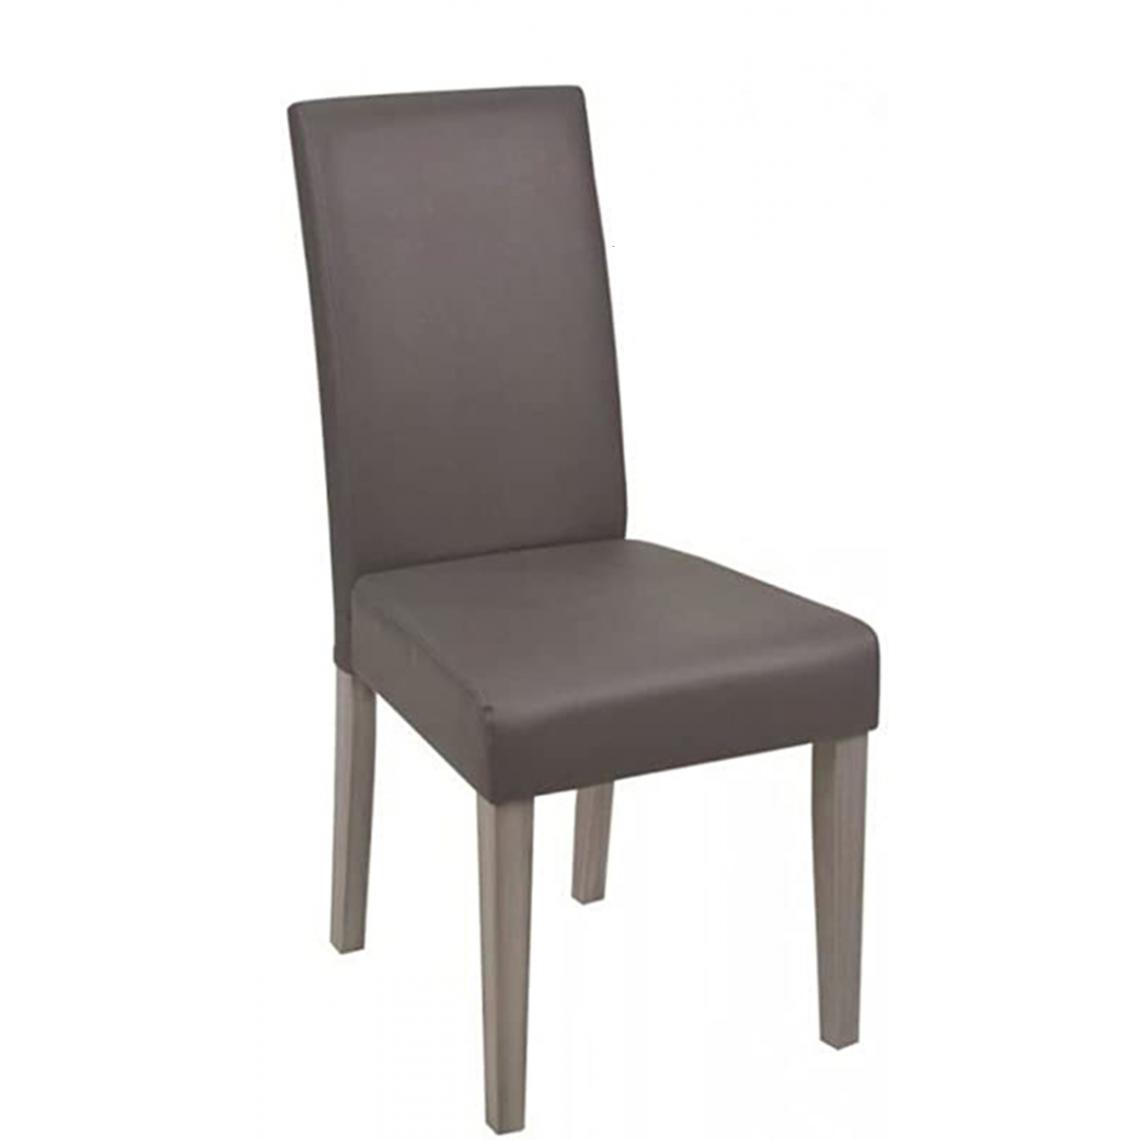 Pegane - Lot de 2 chaises en panneaux de particules et similicuir coloris gris - Dim : H 95 x P 56 x L 45cm -PEGANE- - Chaises